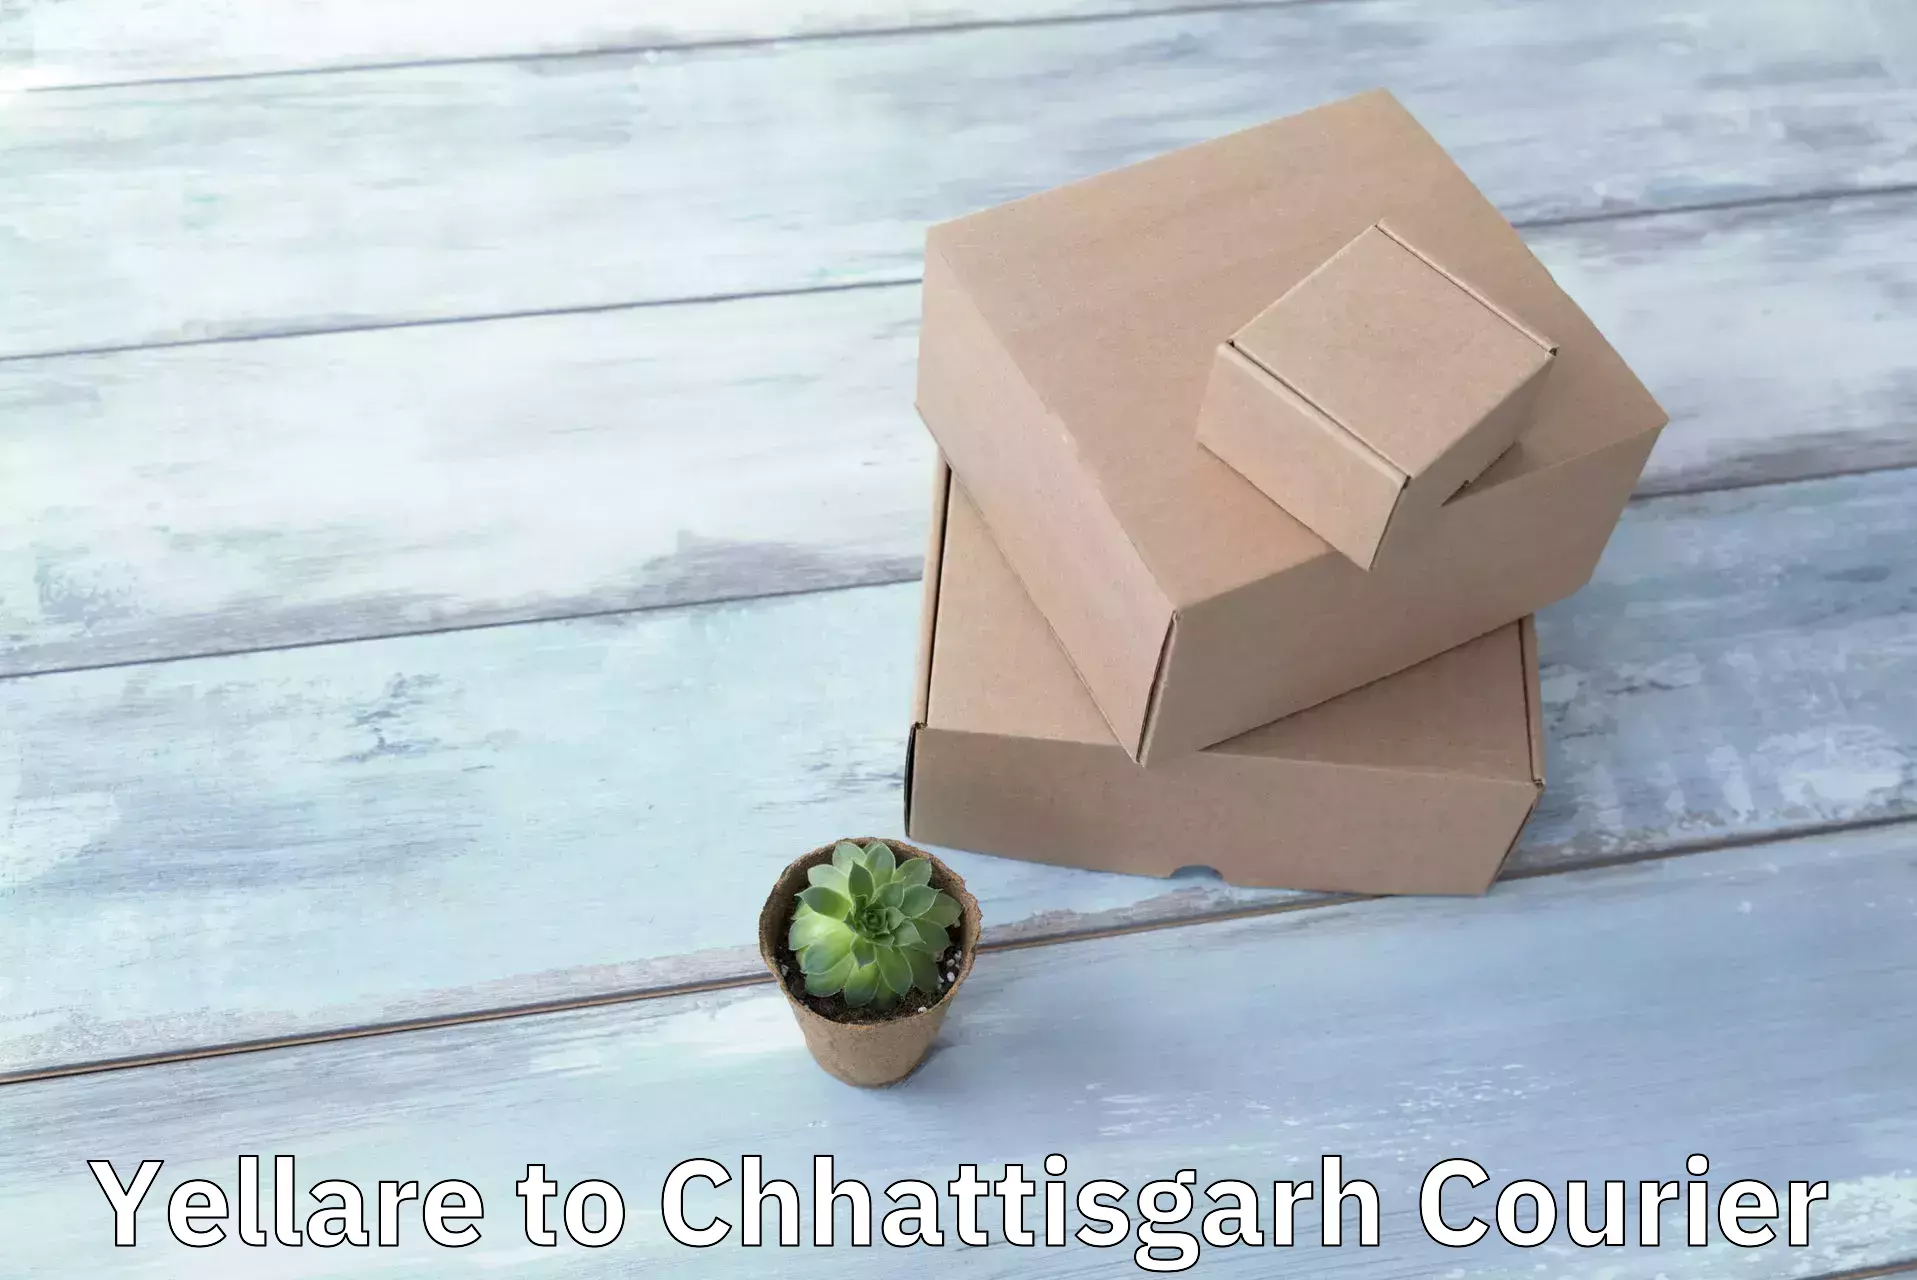 Small parcel delivery Yellare to Chhattisgarh